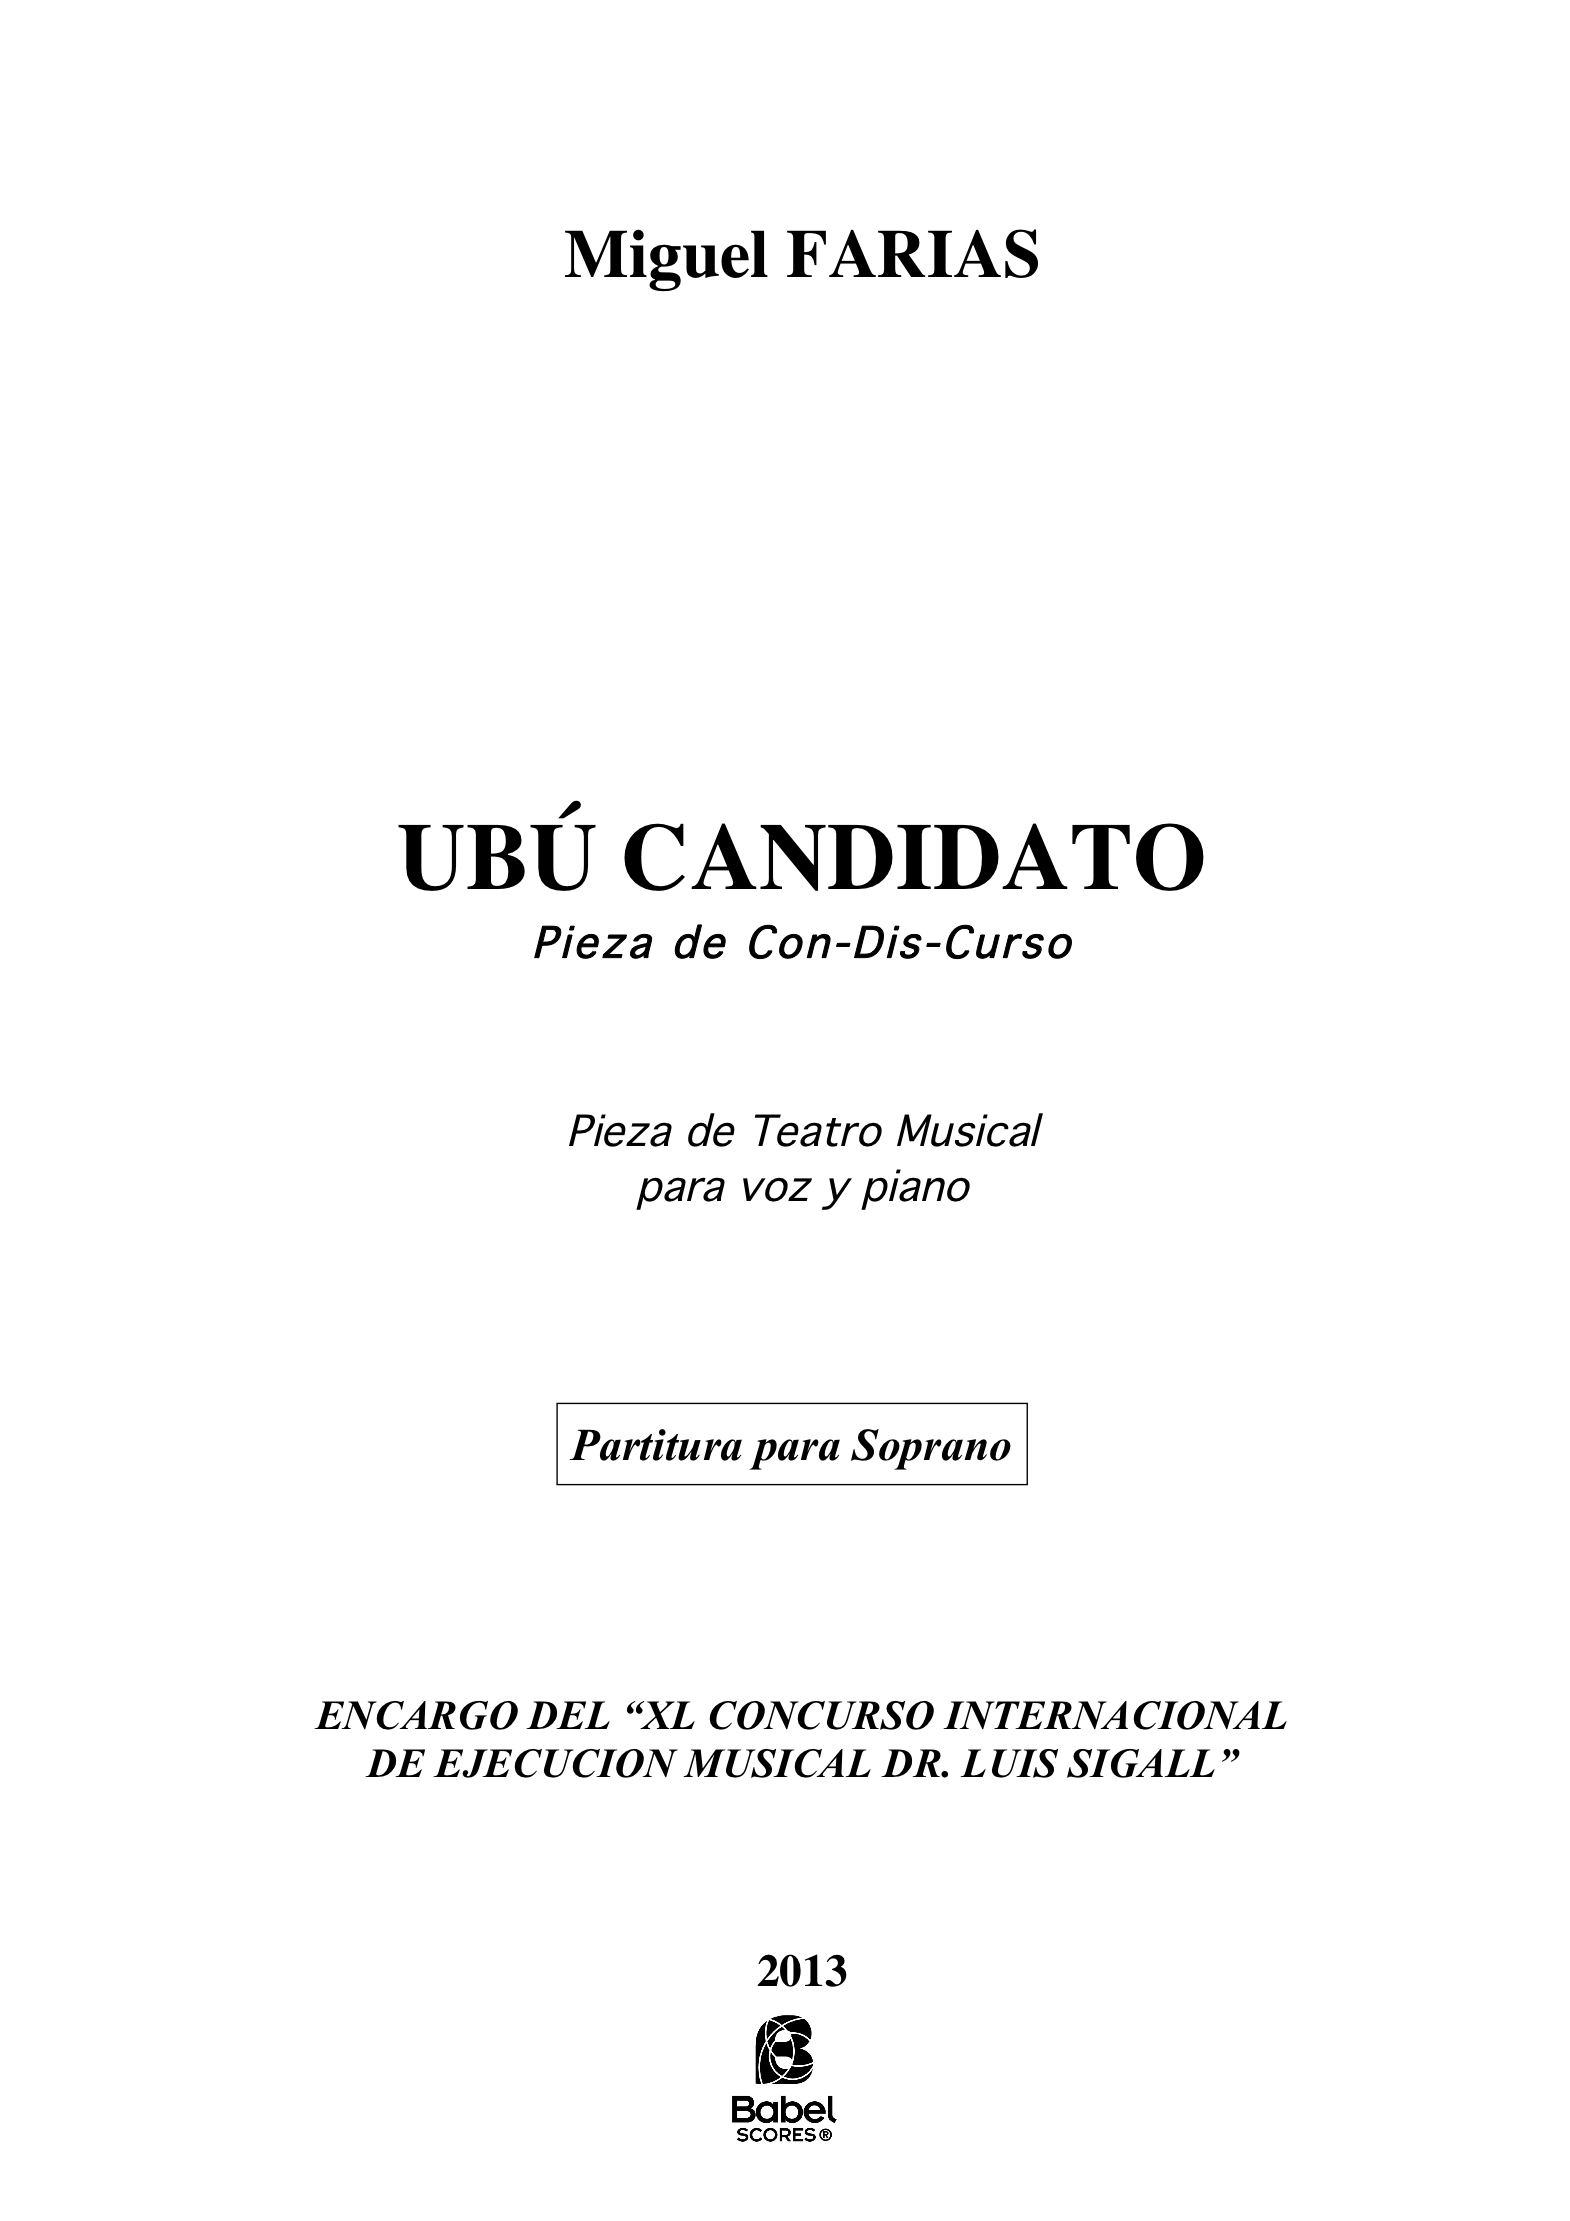 UBU soprano A4 z 2 130 1 465